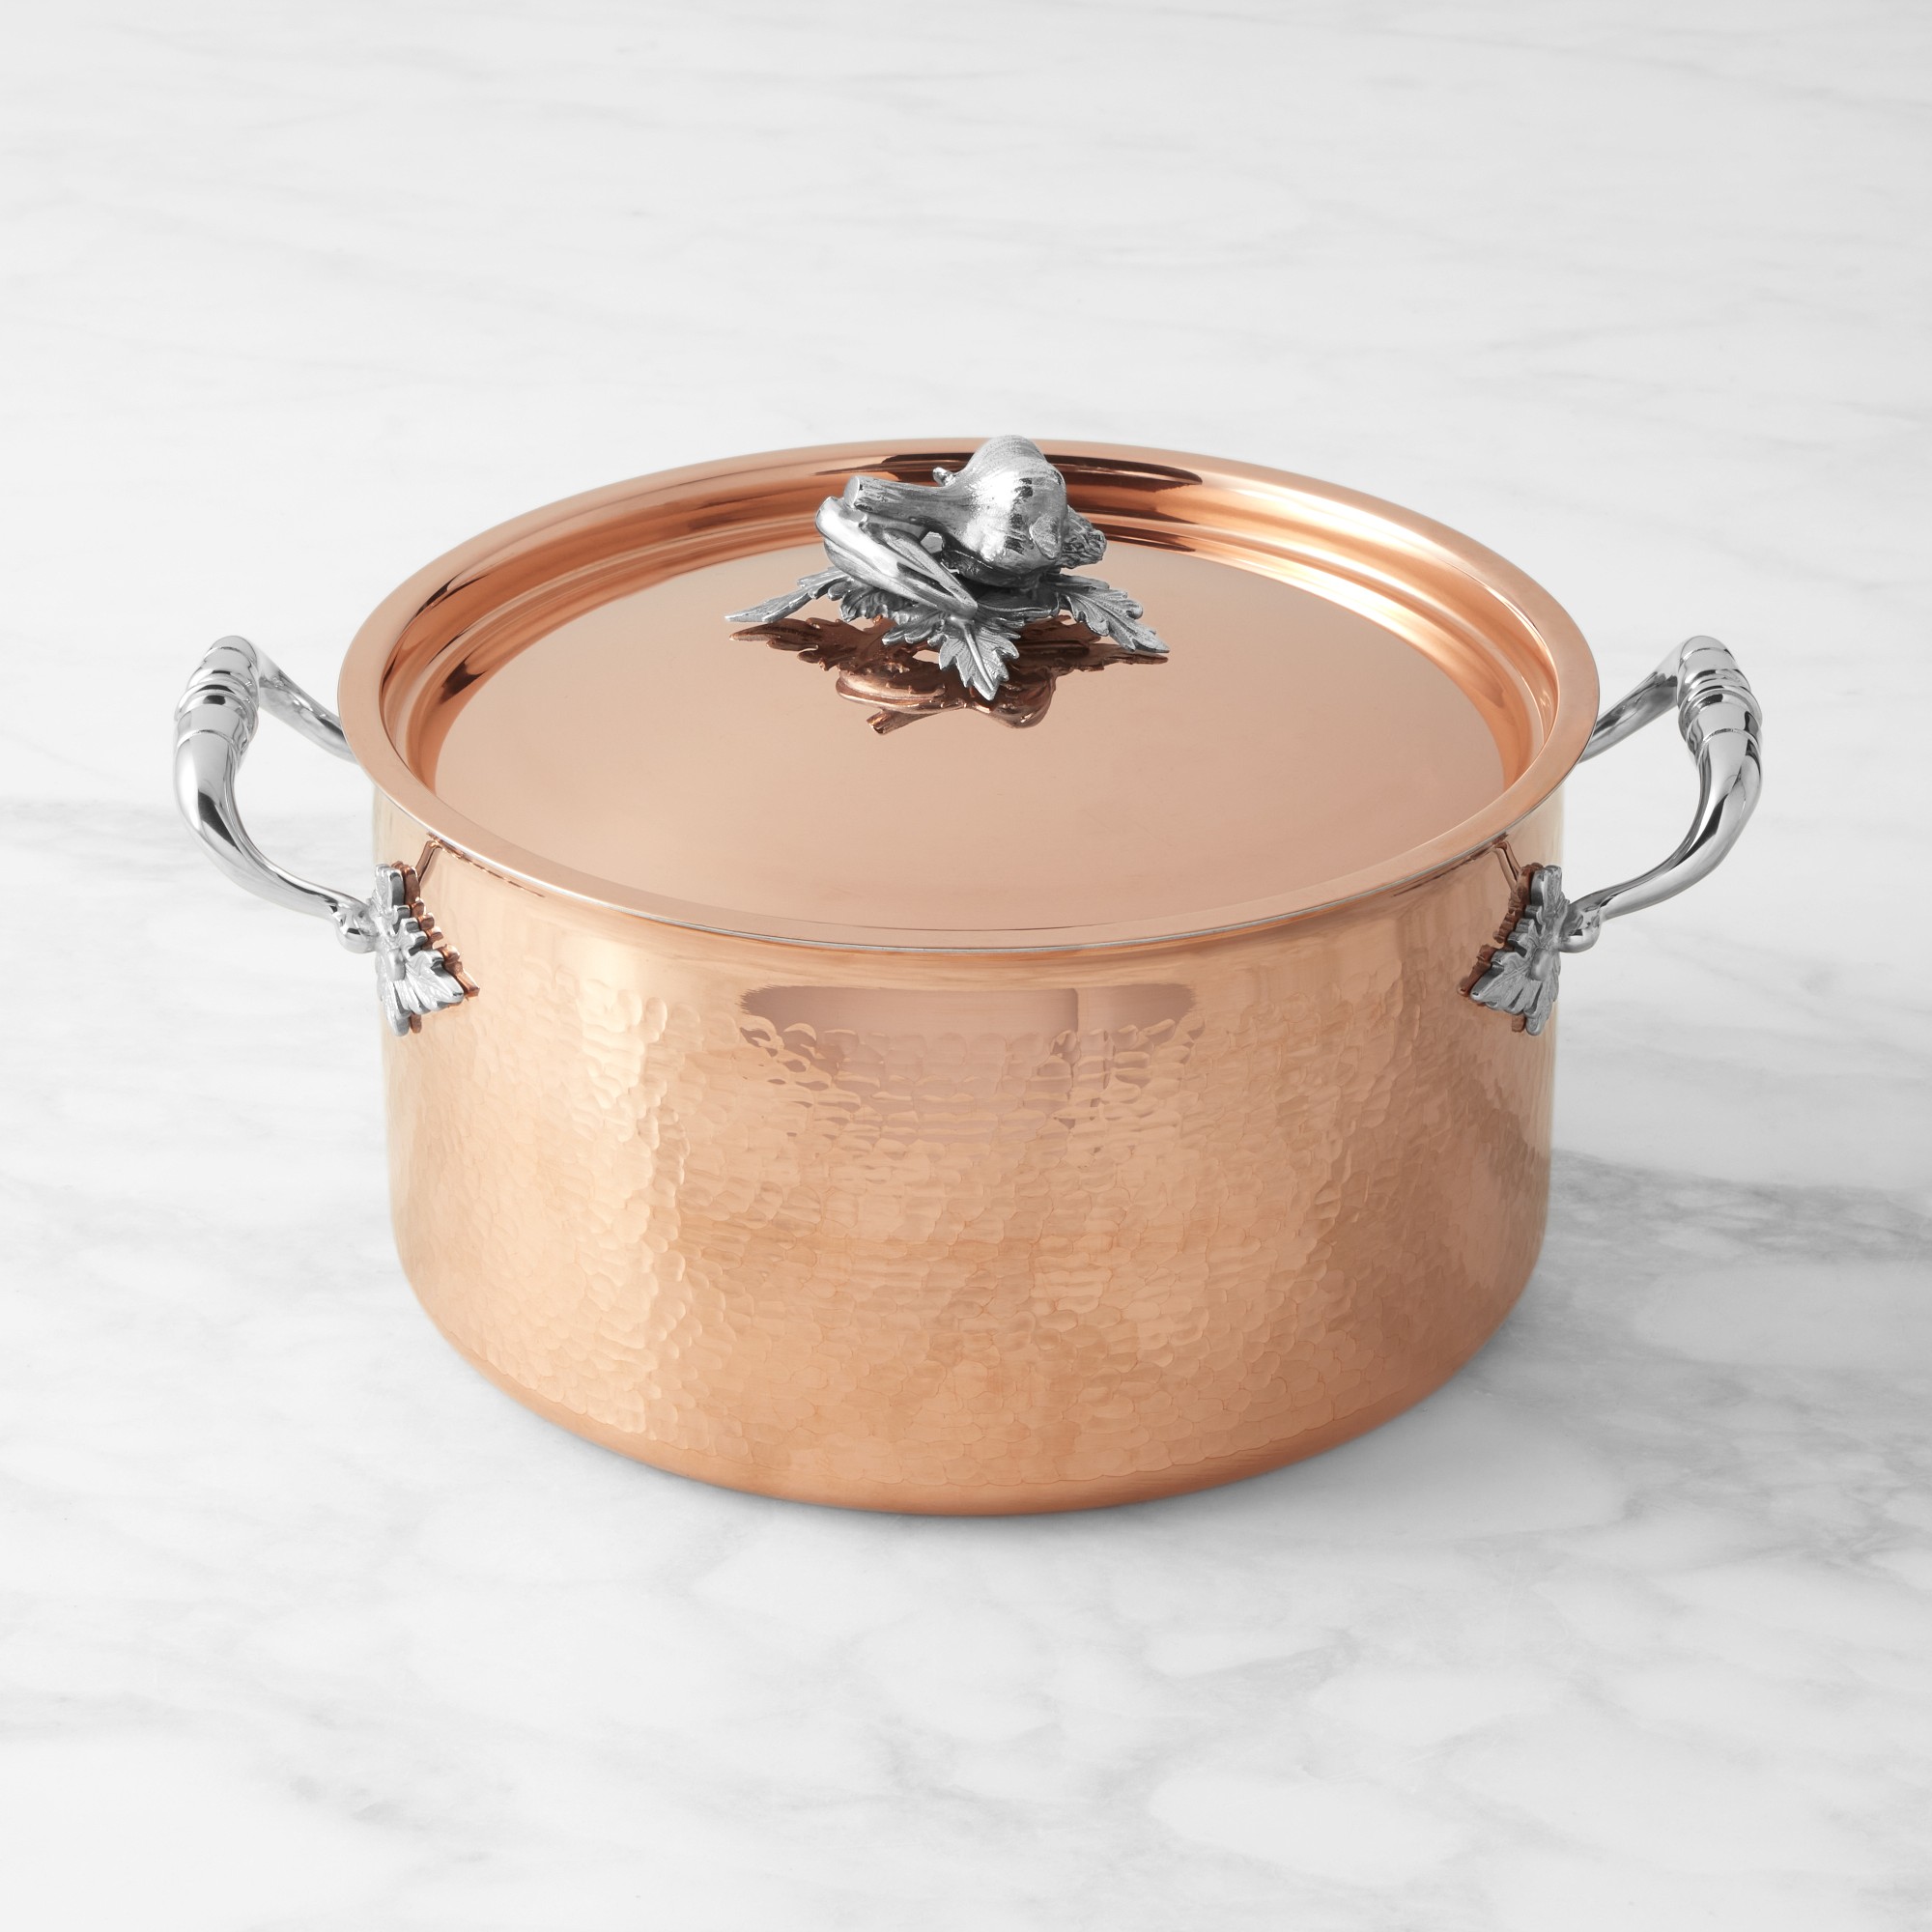 Ruffoni Opus Cupra Hammered Copper Stock Pot with Pepper Knob, 8-Qt.